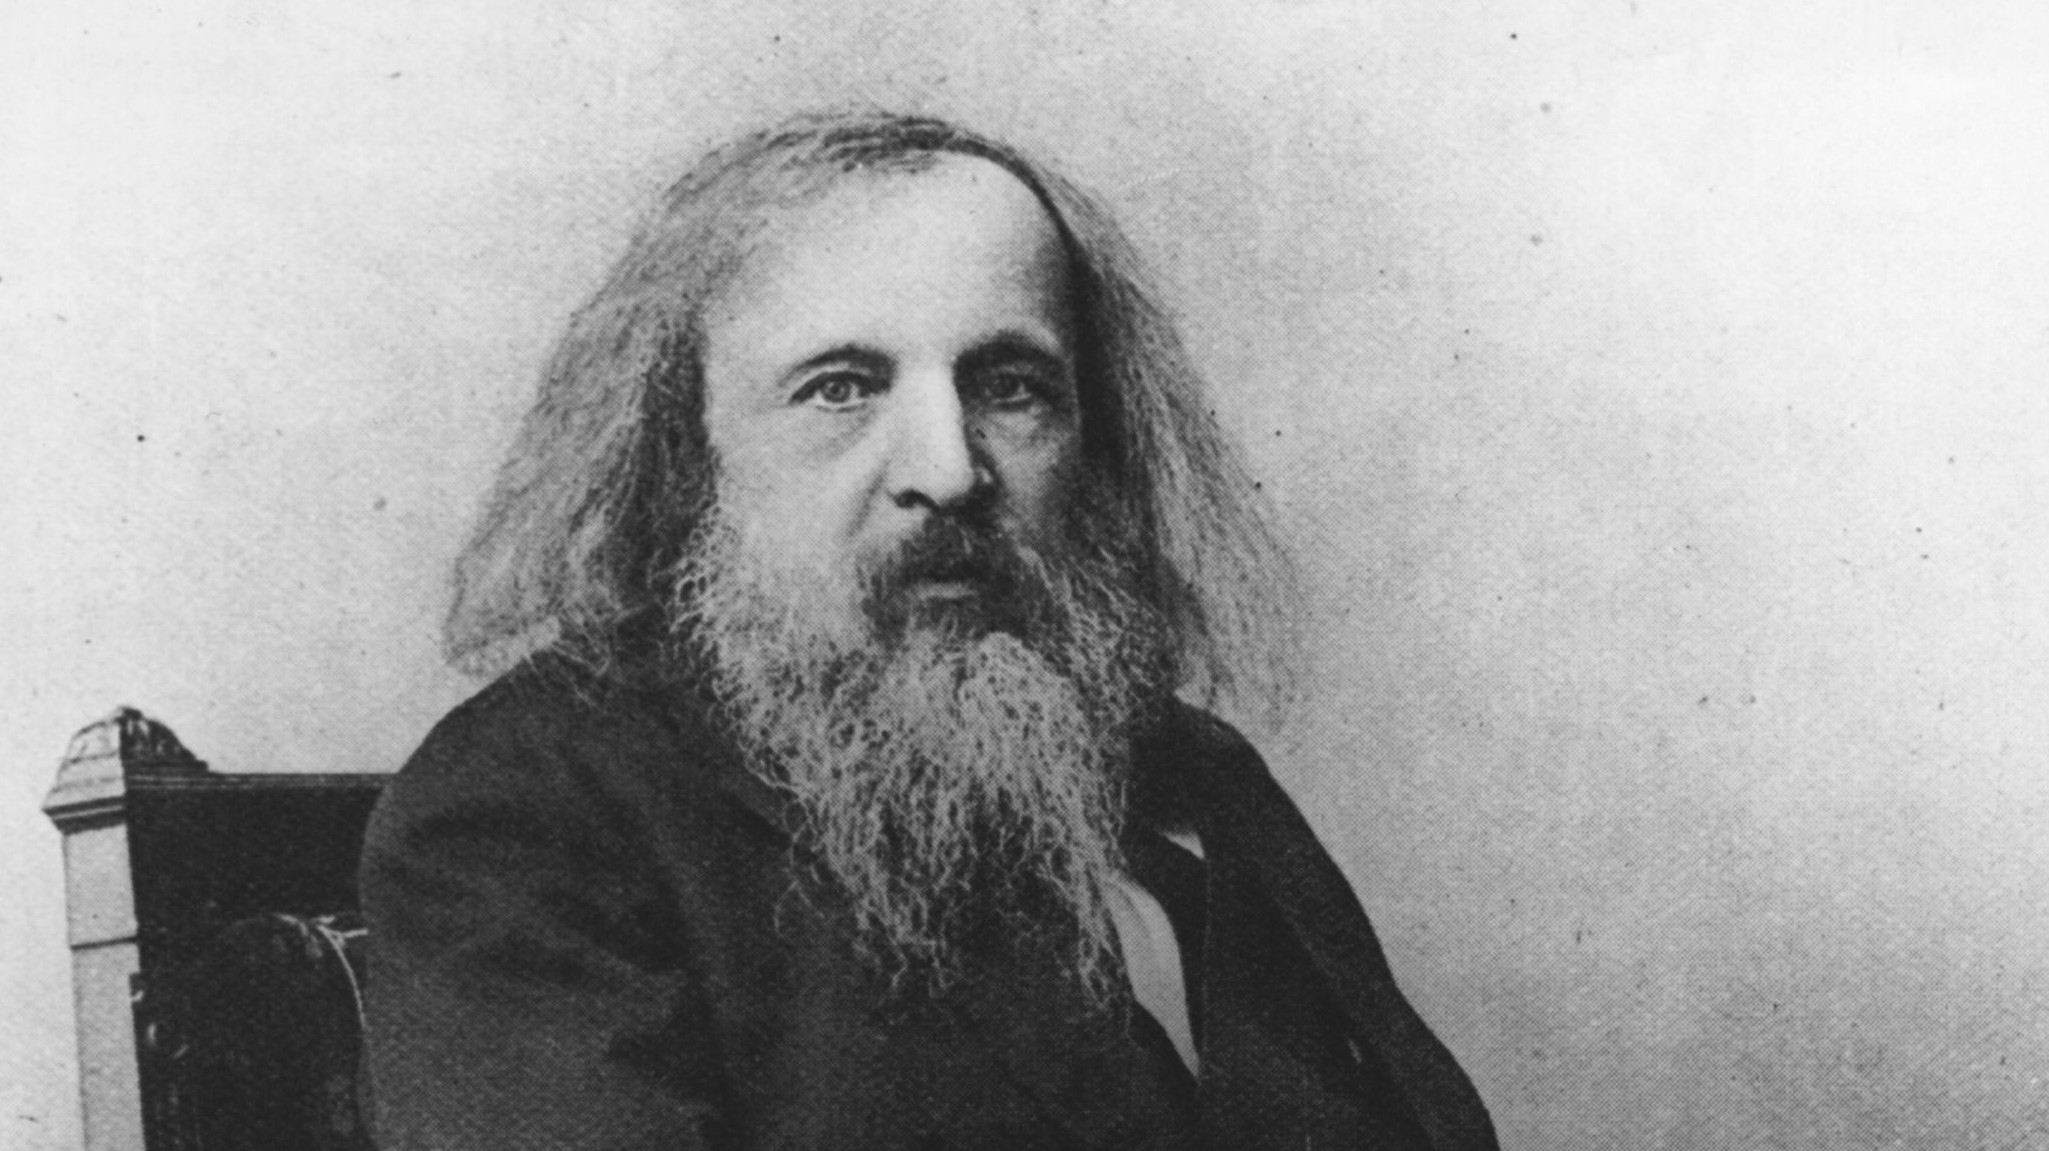 short biography of dmitri mendeleev